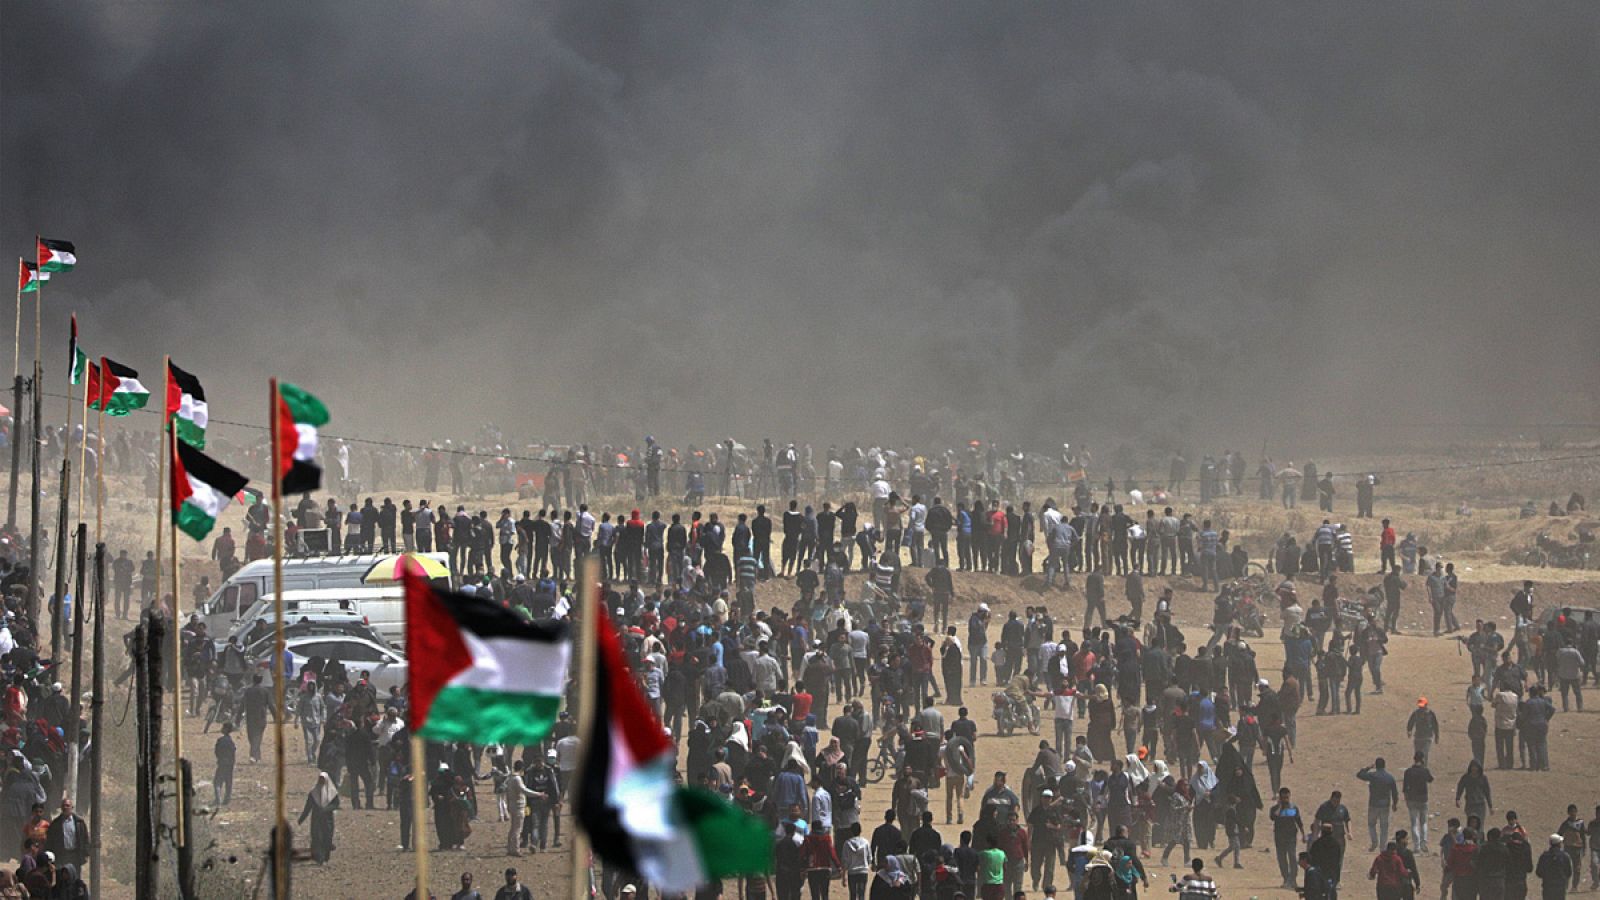 Una multitud camina entre la humareda generada por los neumáticos quemados durante las protestas en Gaza